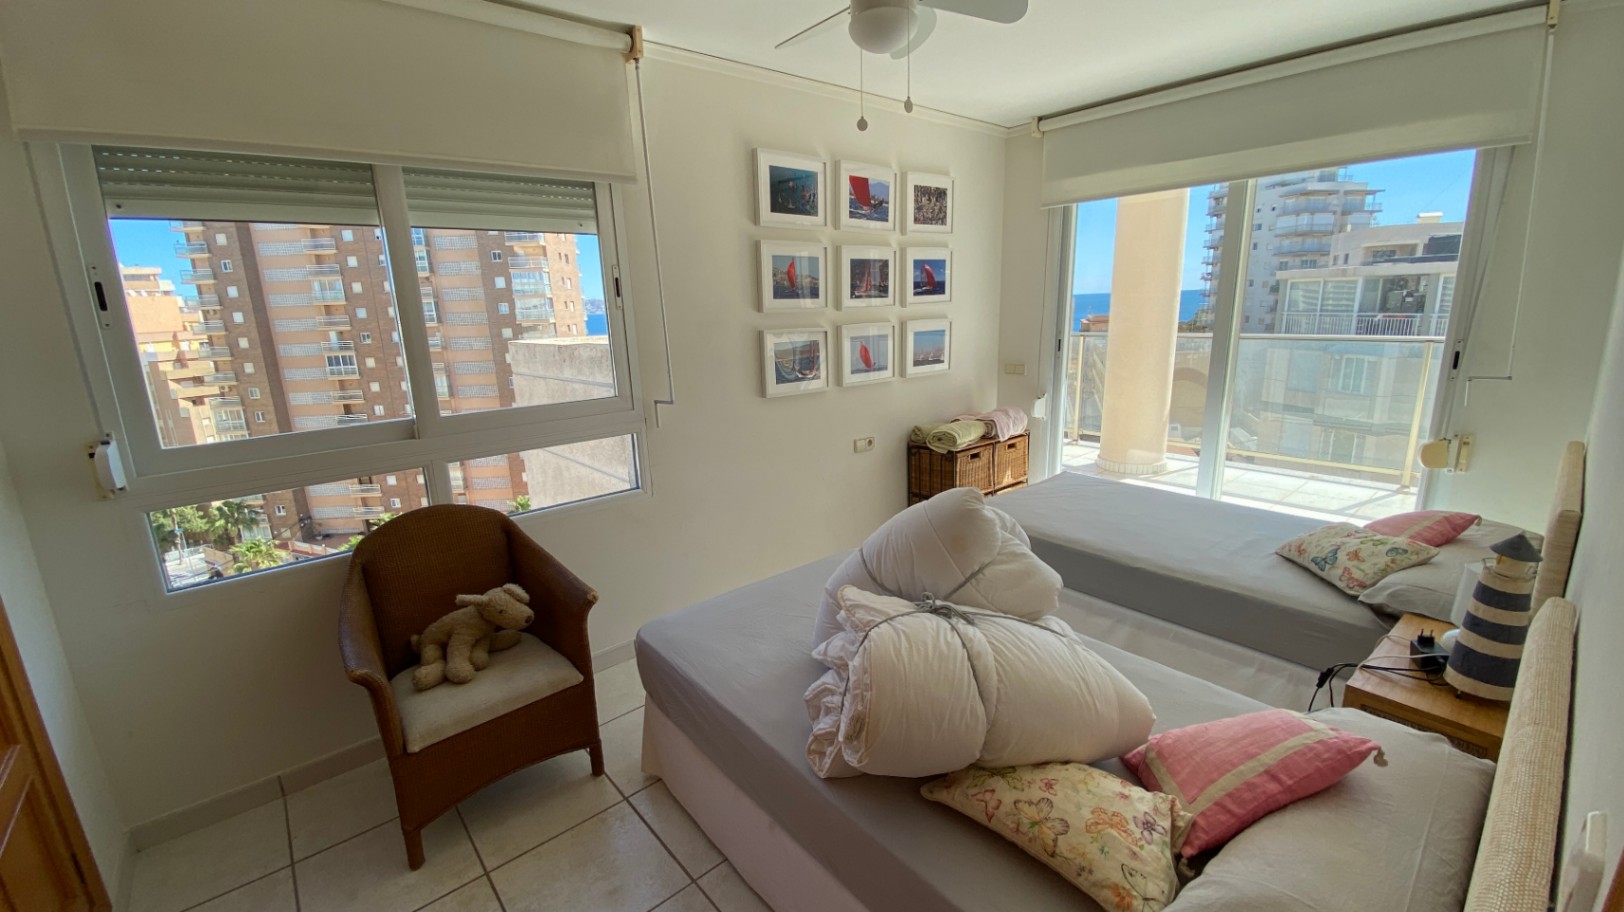 Alquiler anual! Amplio y acogedor apartamento con vistas panorámicas al mar en el puerto de Calpe.